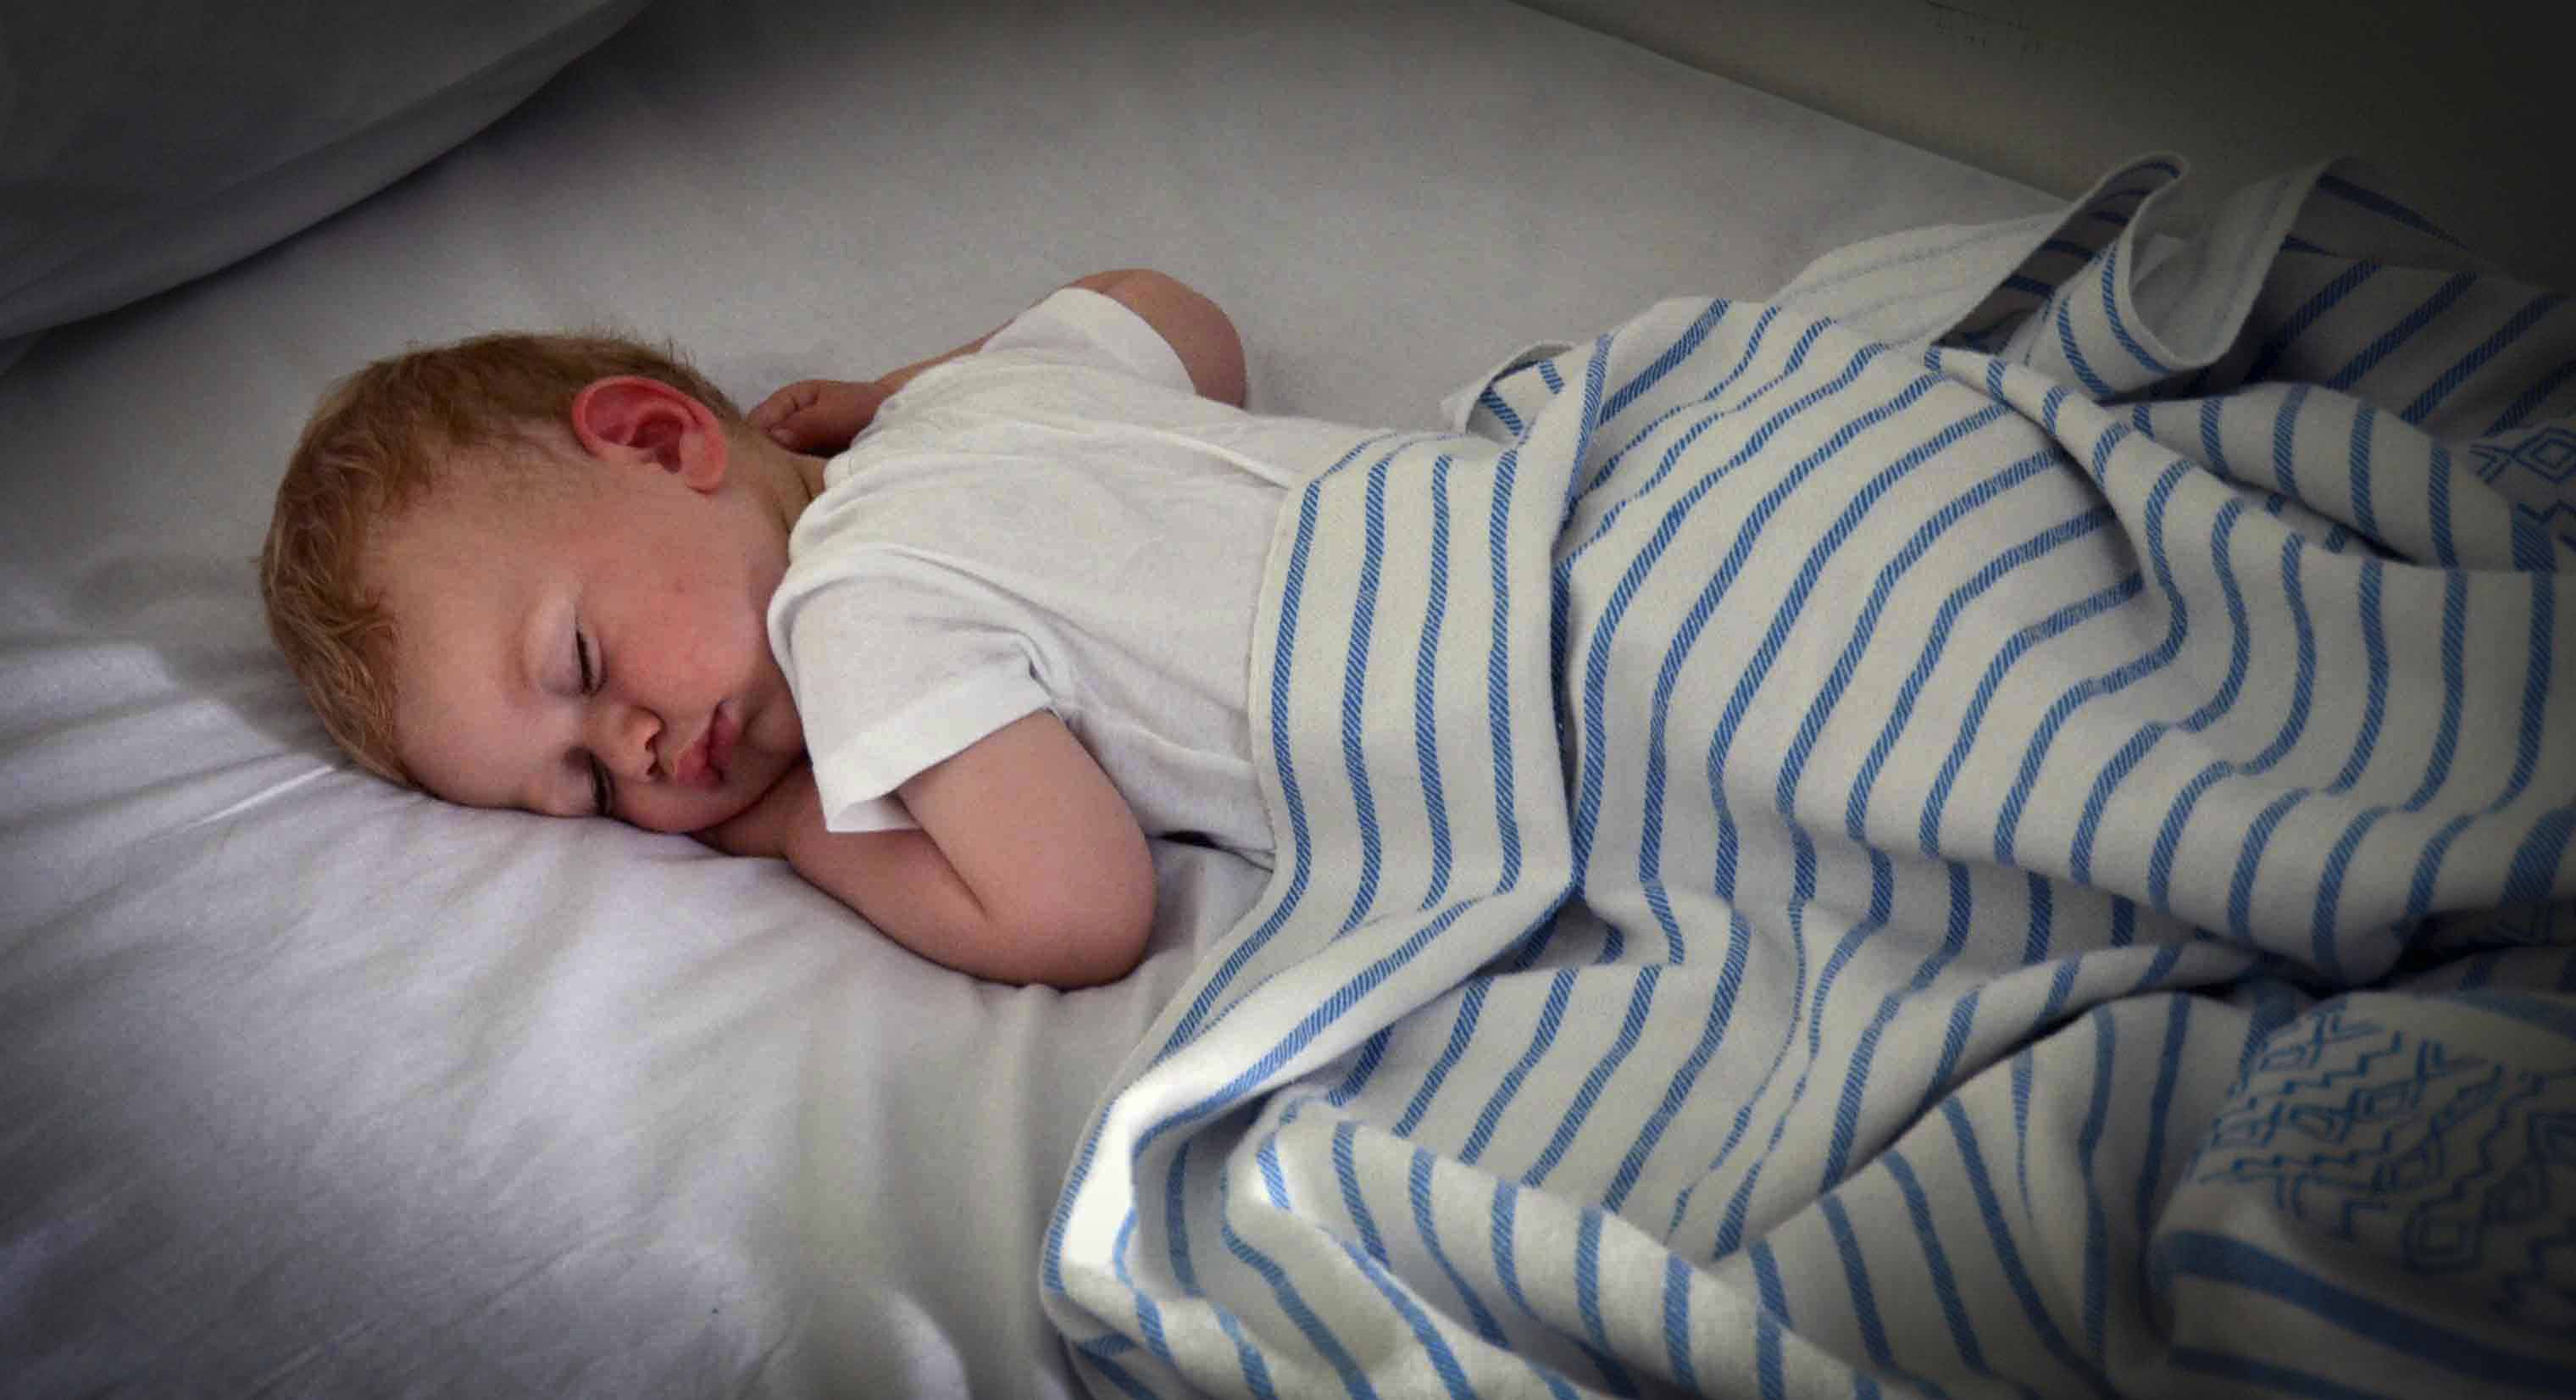 Hvornår skal dit barn gå i seng? Den praktiske vejledning EFTER DEN ALDER.